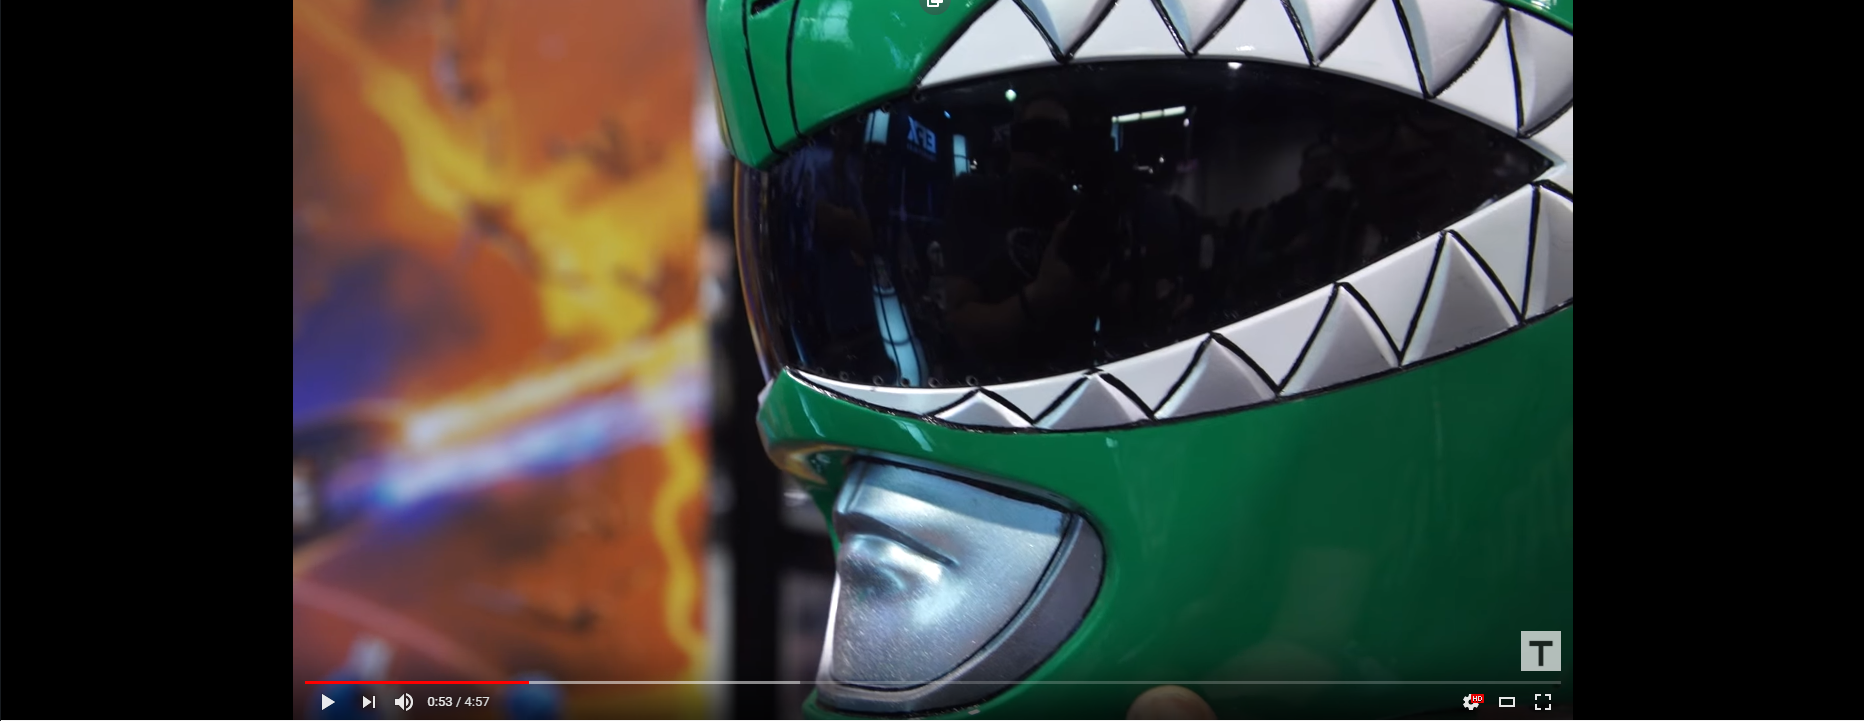 2019-06-29 19_40_42-Original Power Rangers Helmet Prop! - YouTube - Opera.png